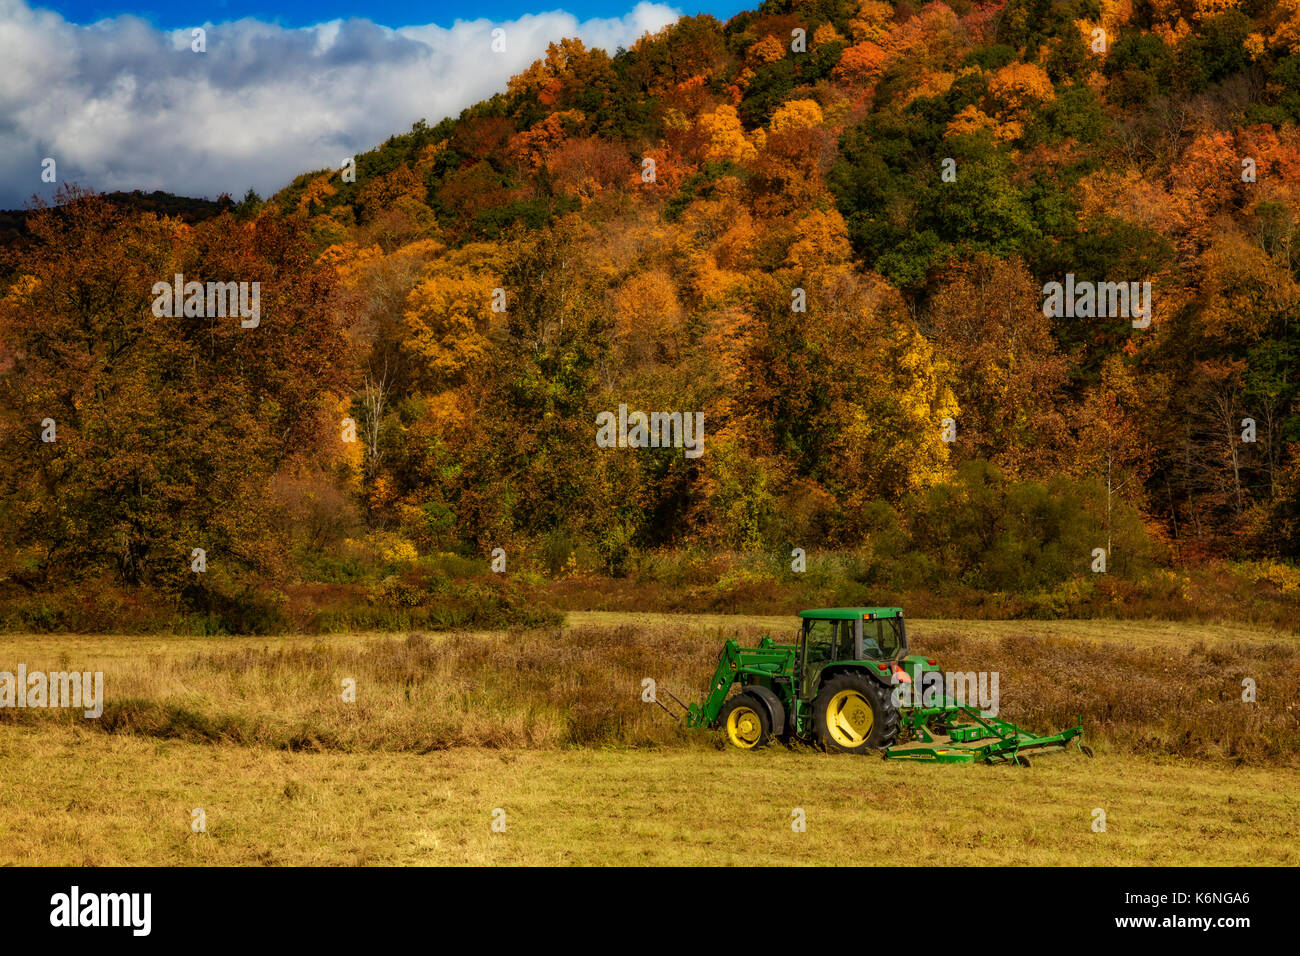 Tractor John Deere - Agricultor trabaja en el campo con un tractor John Deere 640 con una segadora rotativa HX10 adjunto en la espalda y las lanzas de fardo en la parte delantera del tractor. Las montañas en el fondo están mostrando los colores cálidos de la temporada de otoño. Foto de stock